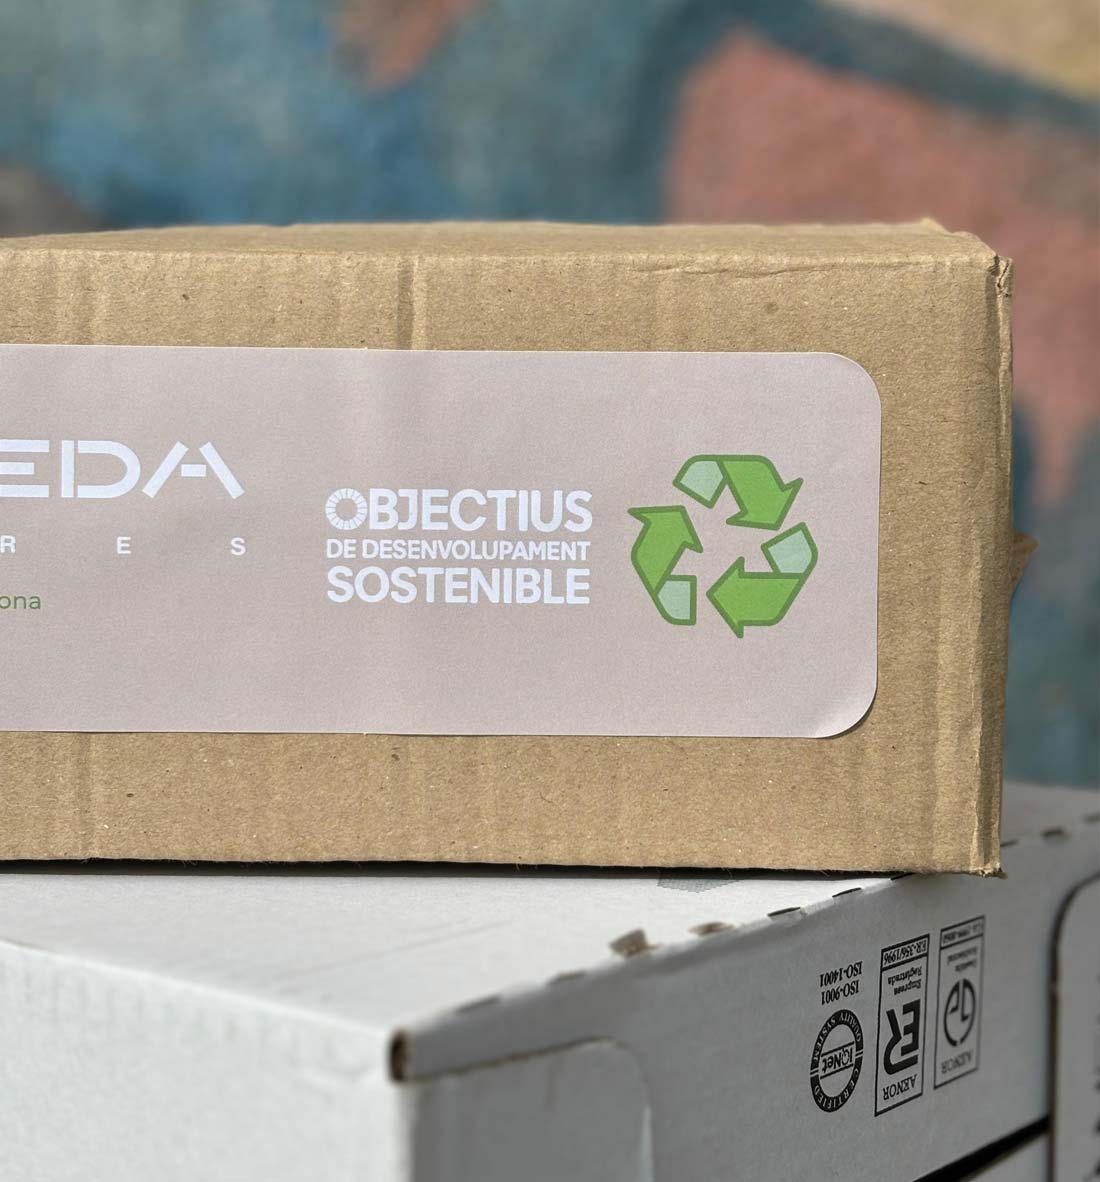 Fontfreda Responsabilitat Social Corporativa reciclatge de caixes